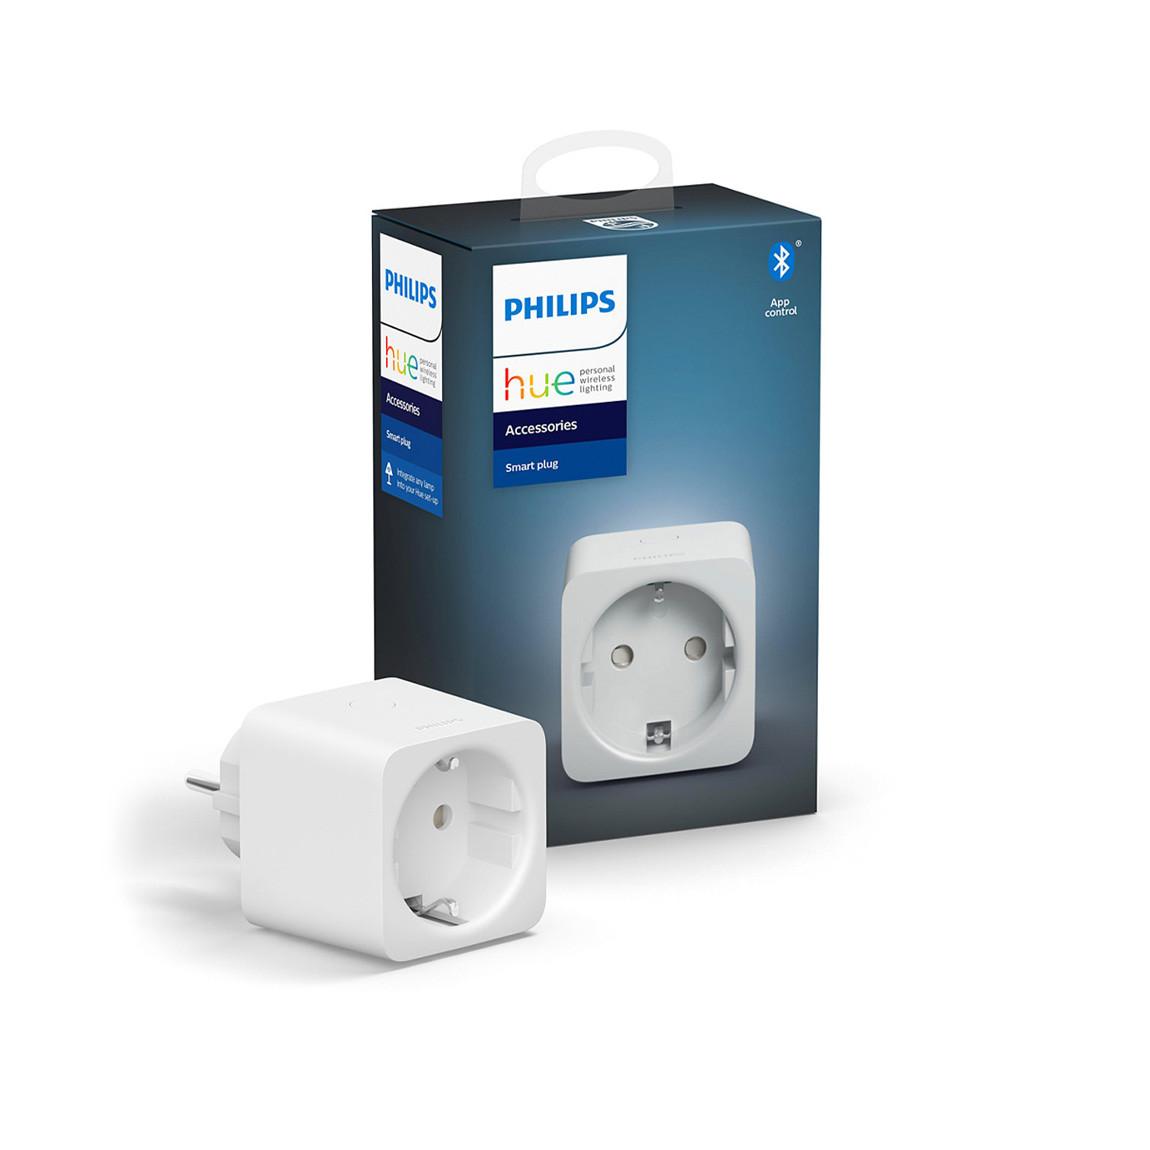 Philips Hue Smart Plug Verpackung